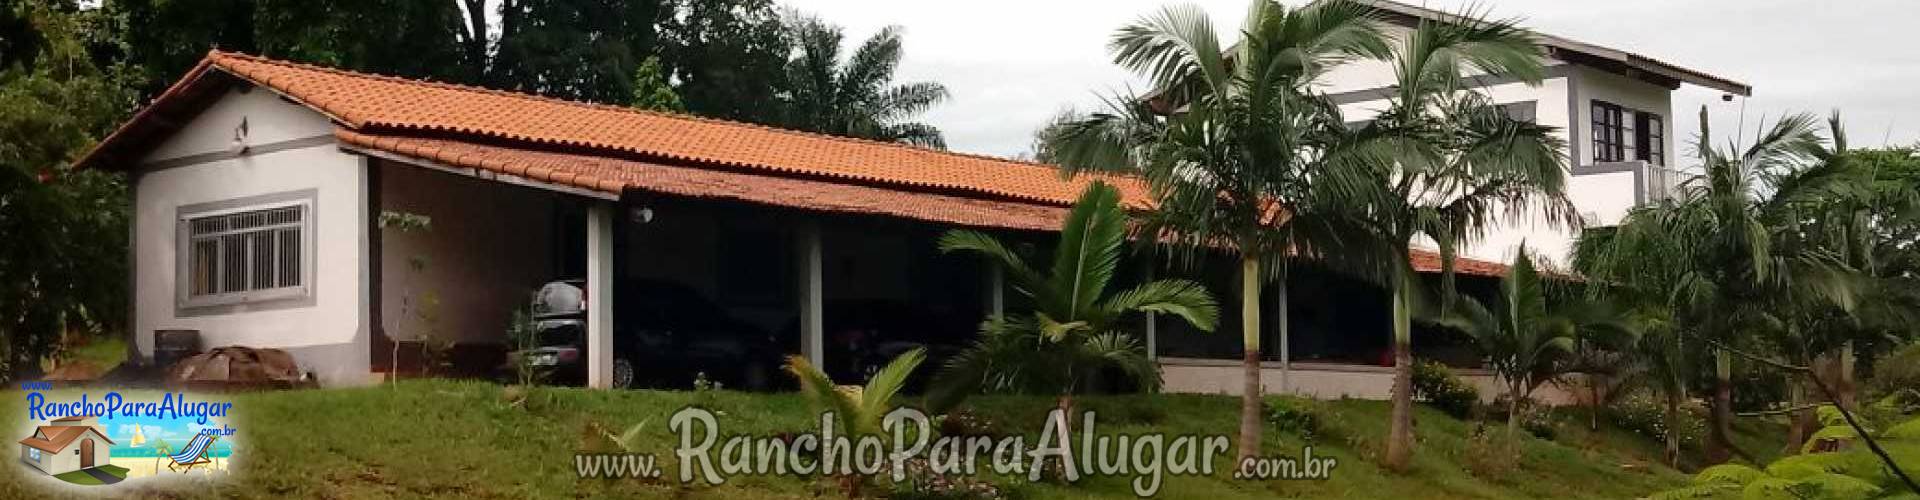 Rancho Para Alugar - Descrição Chácara Mirante para Alugar em